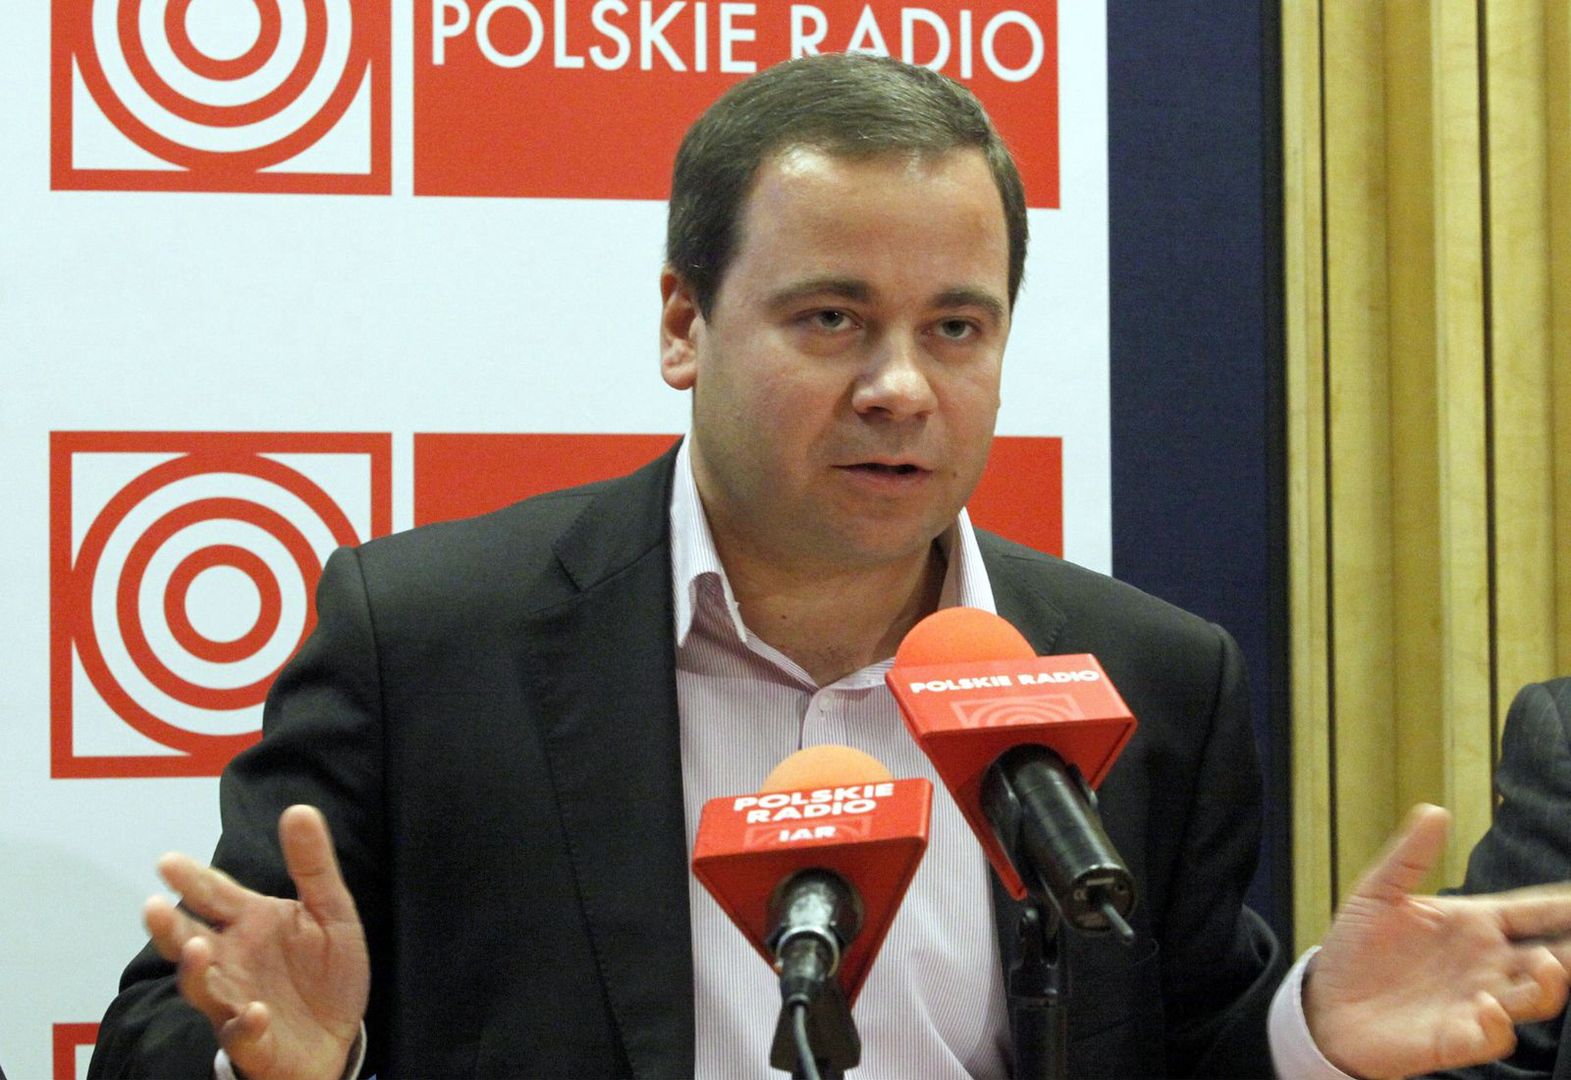 Ujawniono zarobki likwidatora Polskiego Radia. Kwota zwala z nóg